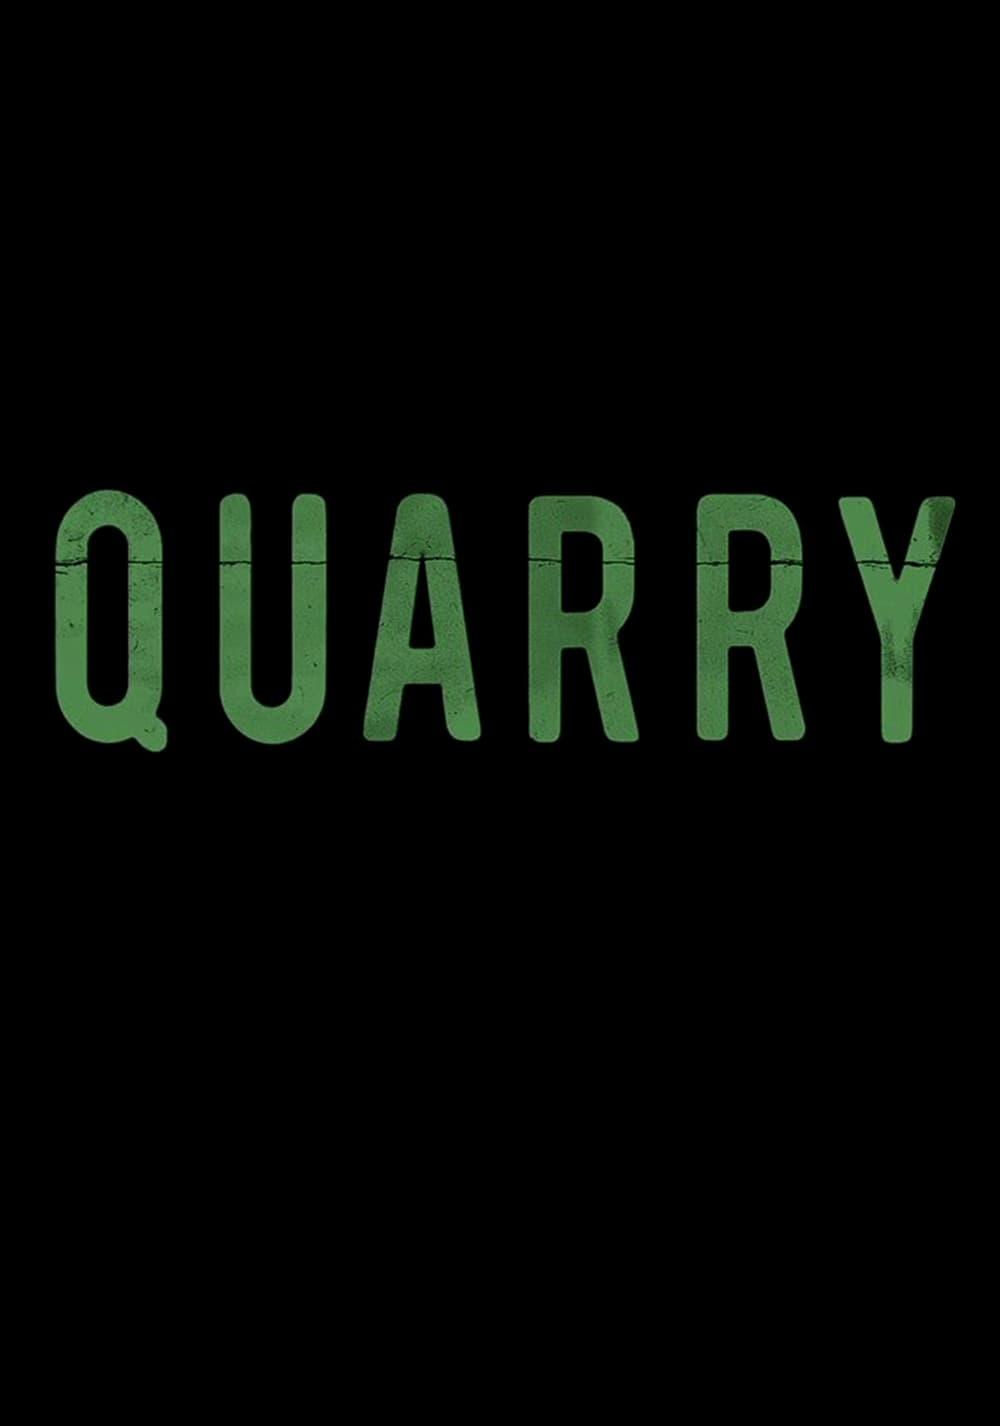 Quarry poster